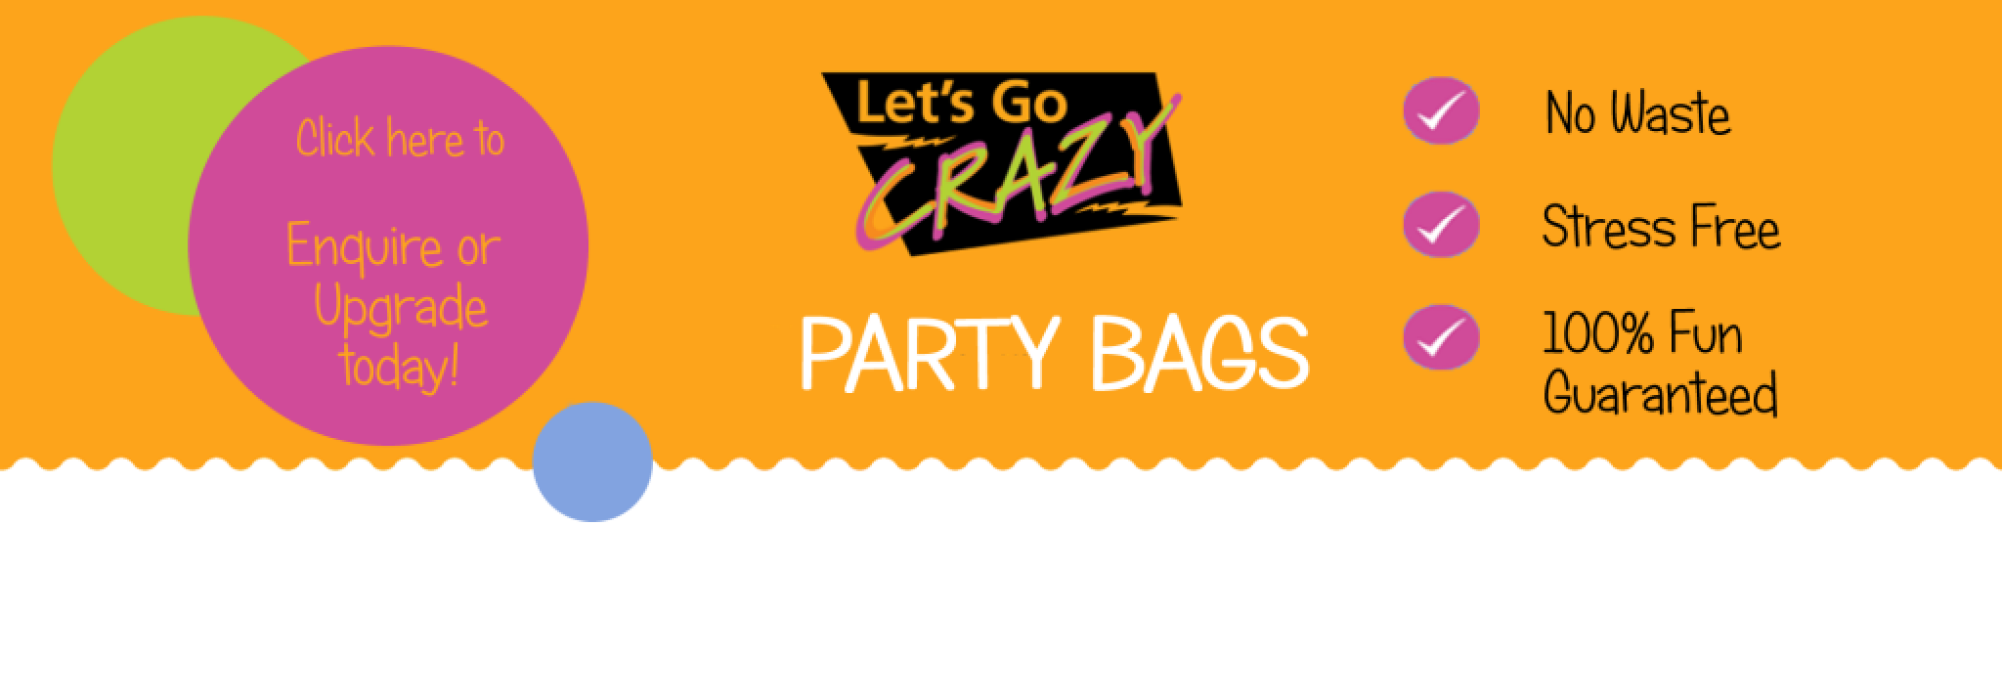 Lets Go Crazy Party Bags